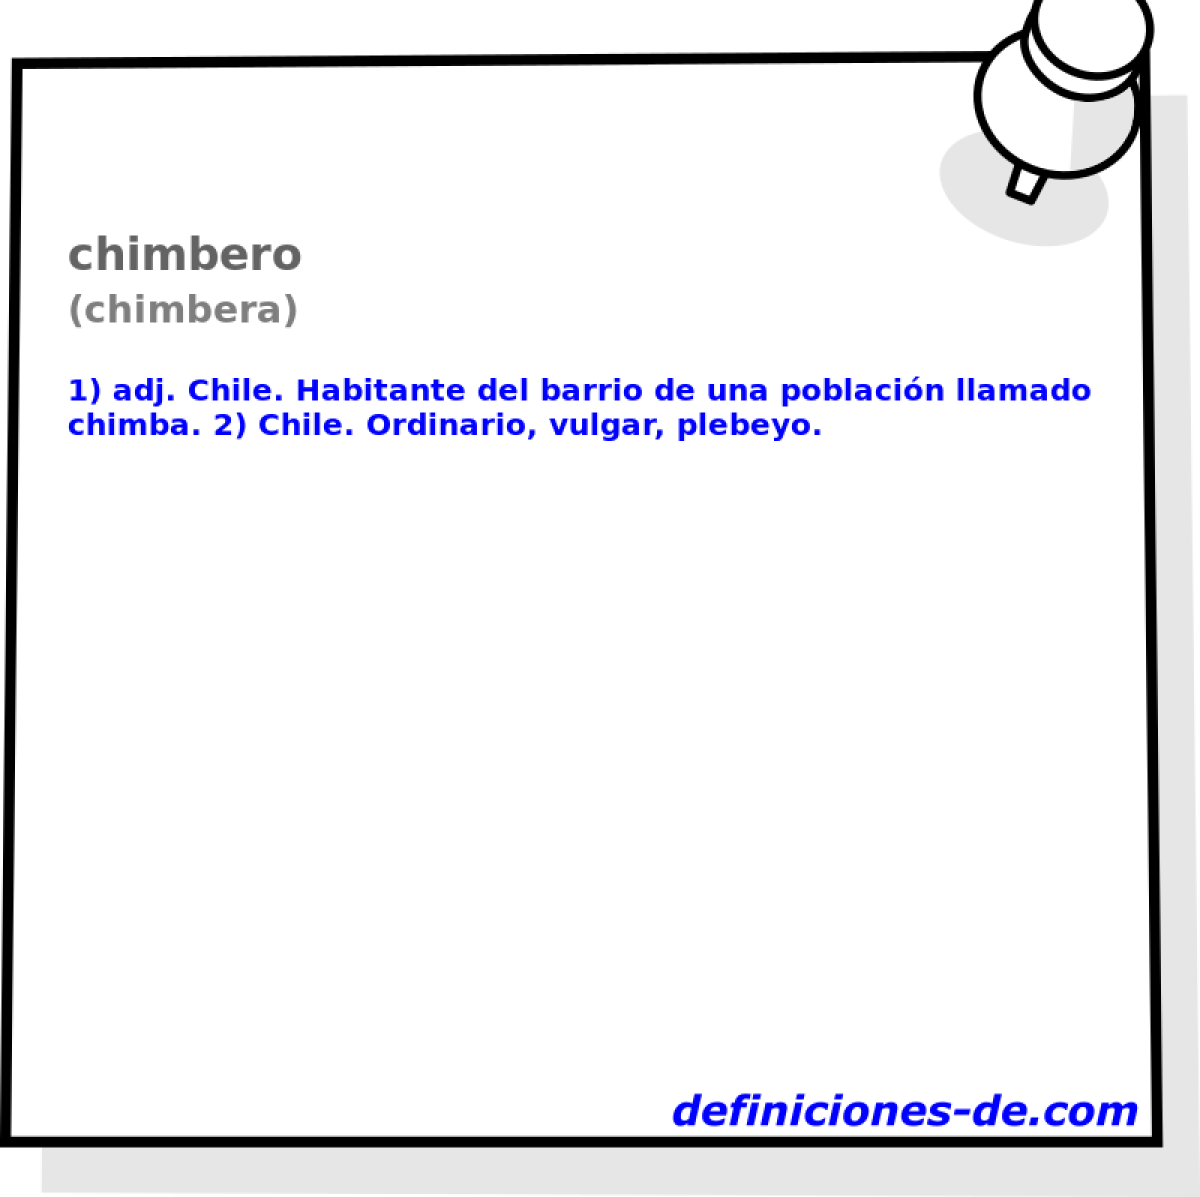 chimbero (chimbera)